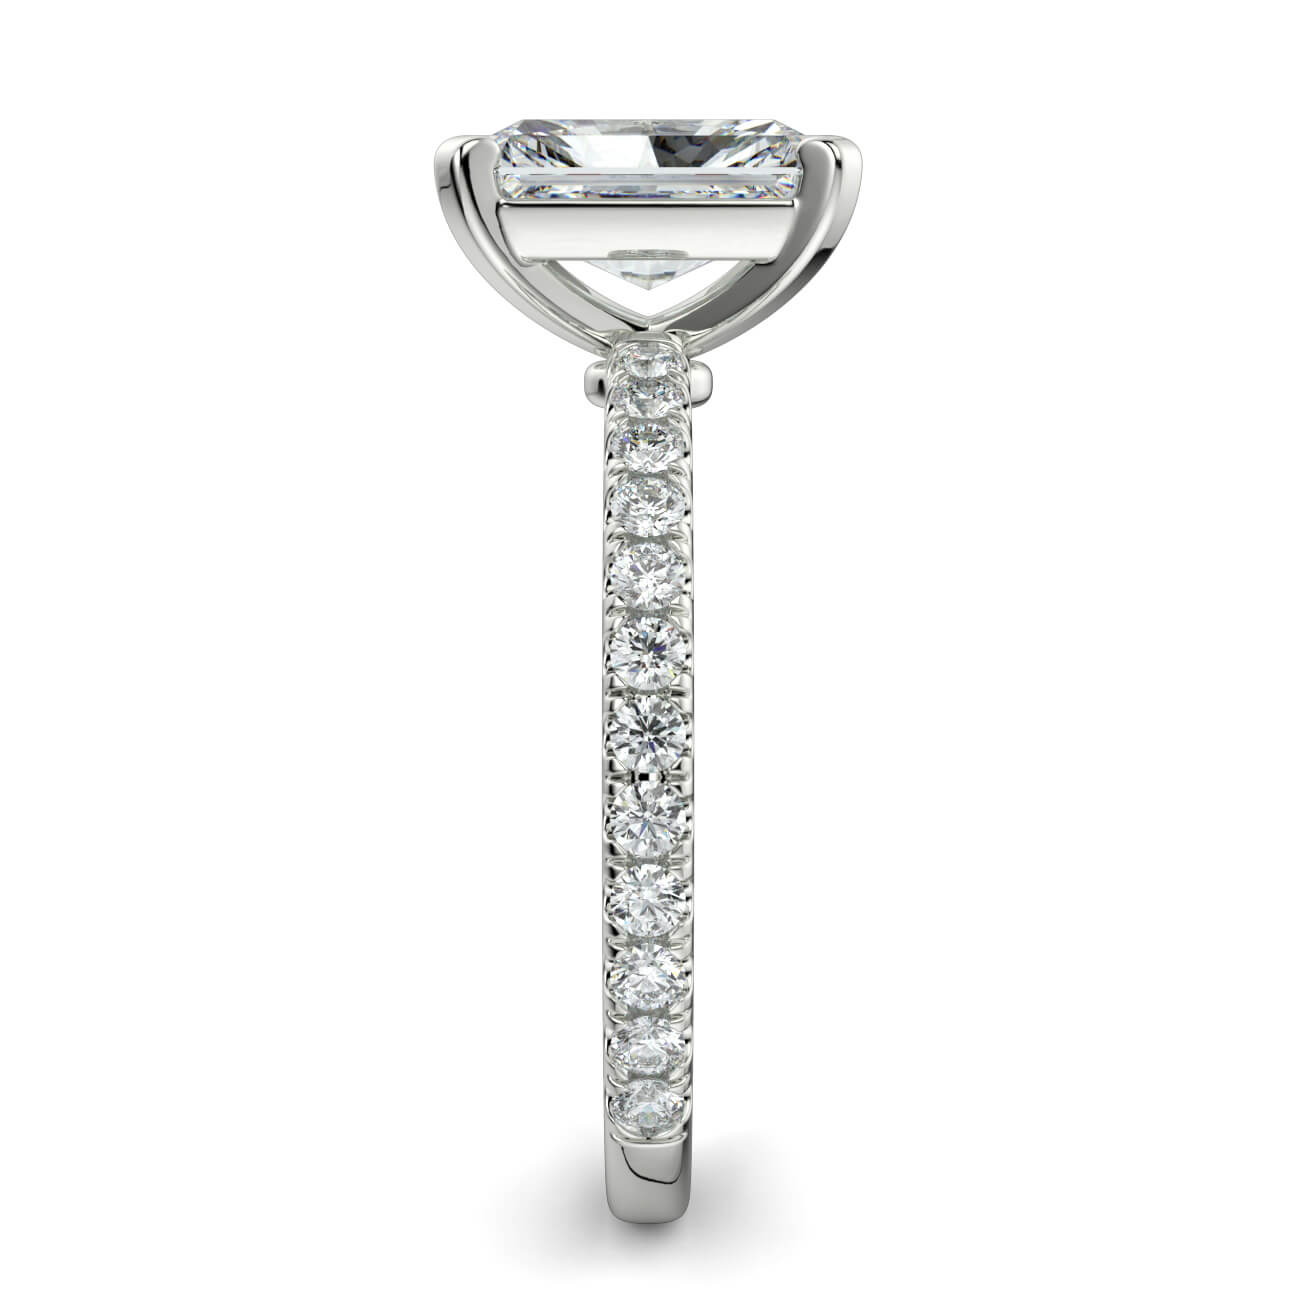 Delicate ‘Liat’ Radiant Cut Diamond Engagement Ring in 18k White Gold – Australian Diamond Network